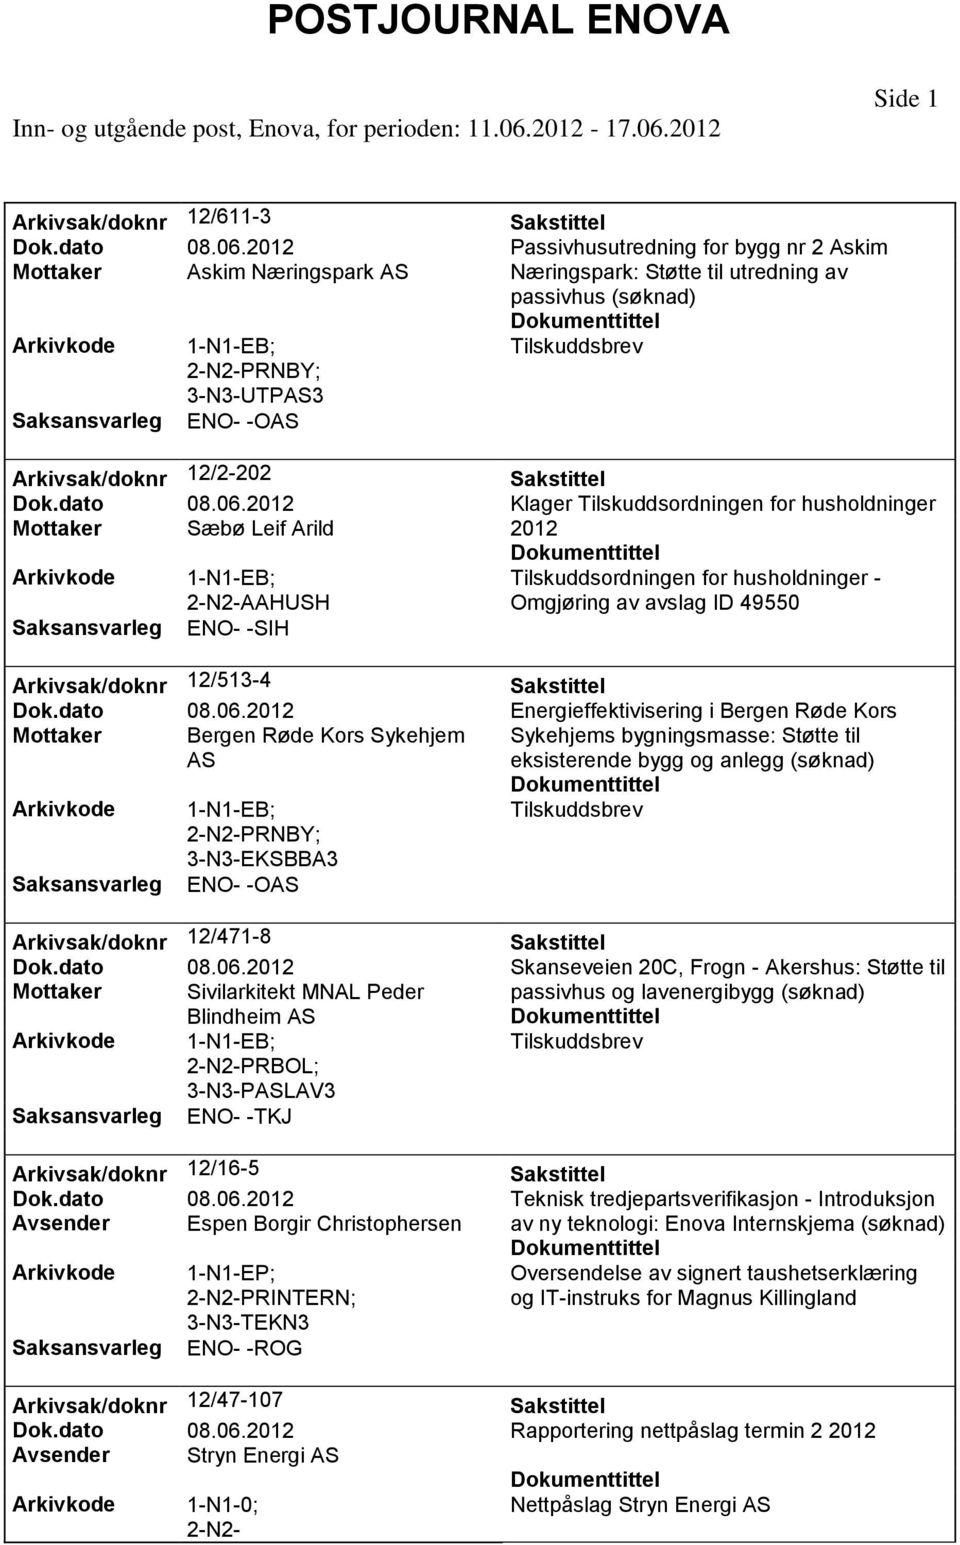 Klager Tilskuddsordningen for husholdninger Mottaker Sæbø Leif Arild AAHUSH Tilskuddsordningen for husholdninger - Omgjøring av avslag ID 49550 ENO- -SIH Arkivsak/doknr 12/513-4 Dok.dato 08.06.